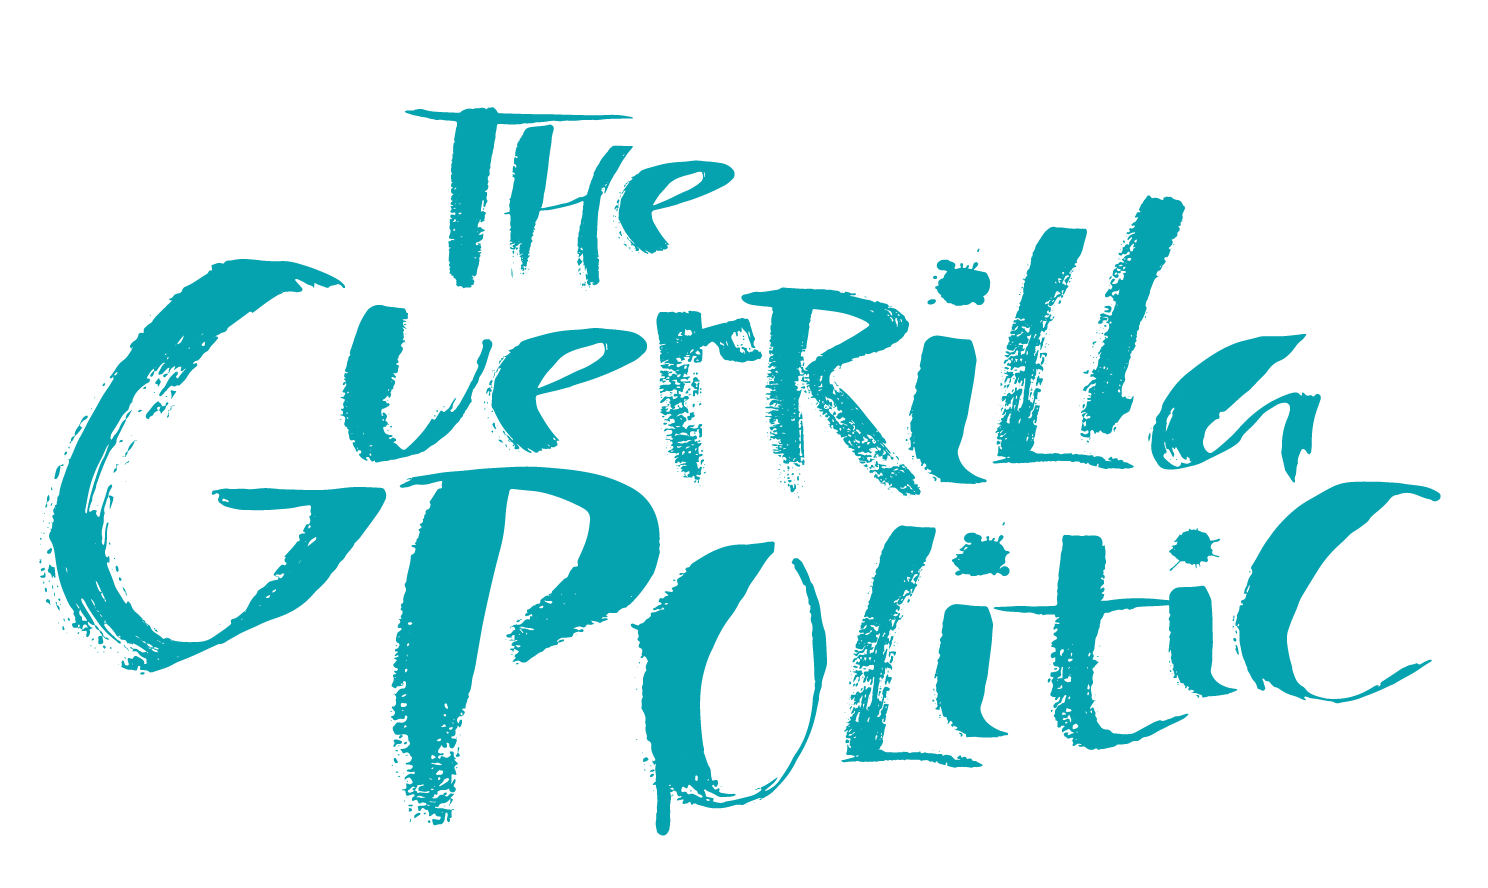 The Guerrilla Politic